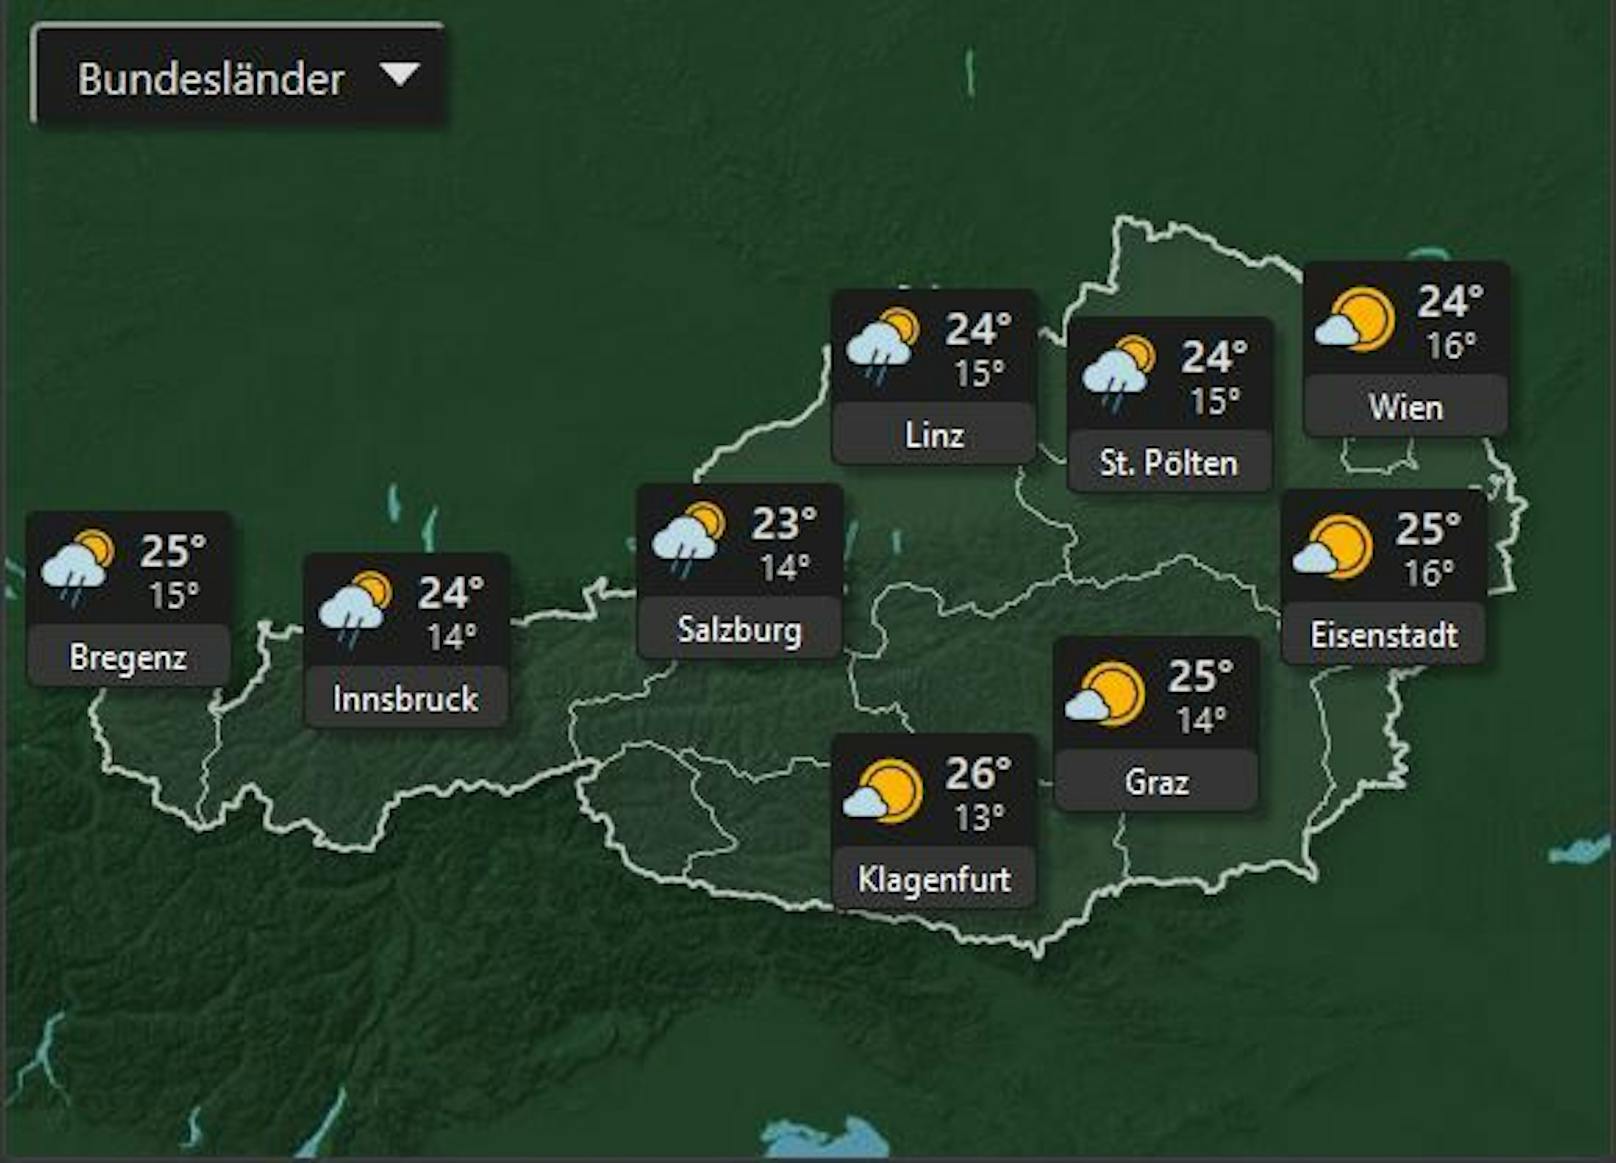 Diesen Donnerstag, dem 7. Juli werden gemäßigte Temperaturen erwartet mit angenehmen Höchstwerten von 26°. Vor allem in Oberösterrreich, Salzburg, Tirol und in Vorarlberg kann es über den Tag verteilt regnen.